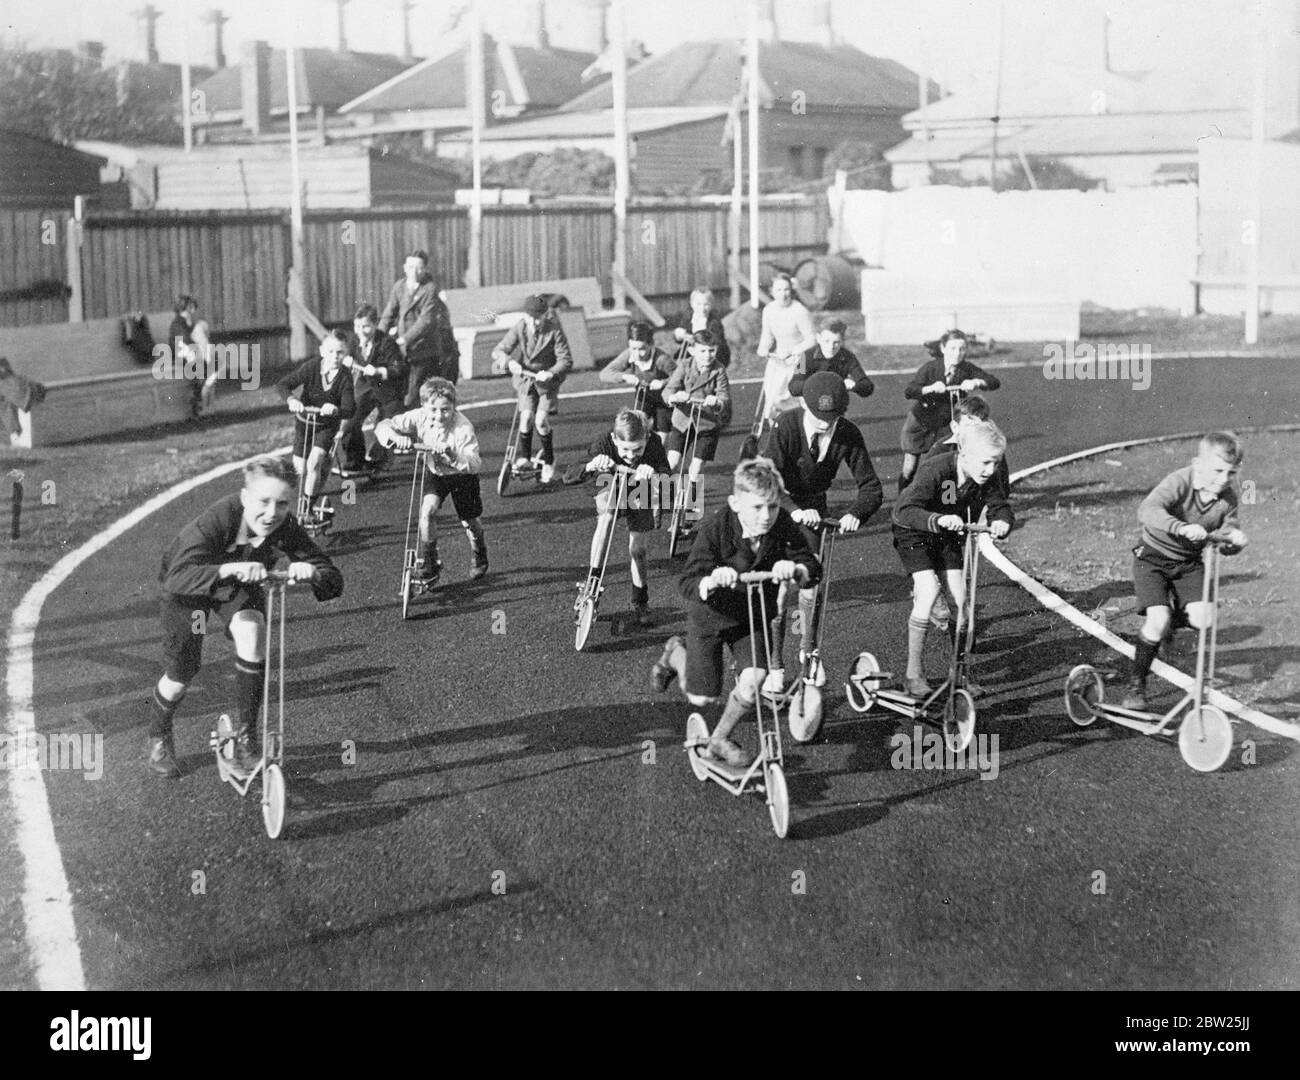 La pista da corsa scooter viene rivisita in grande stile. Così rapido e completo è stato il ritorno alla popolarità dello scooter a Melbourne, Australia, che è stato costruito uno speciale circuito Scooter. Le corse si tengono regolarmente per i bambini dai 4 ai 40 anni. Foto mostra, una corsa in corso sulla pista Scooter di Melbourne. 29 gennaio 1938 Foto Stock